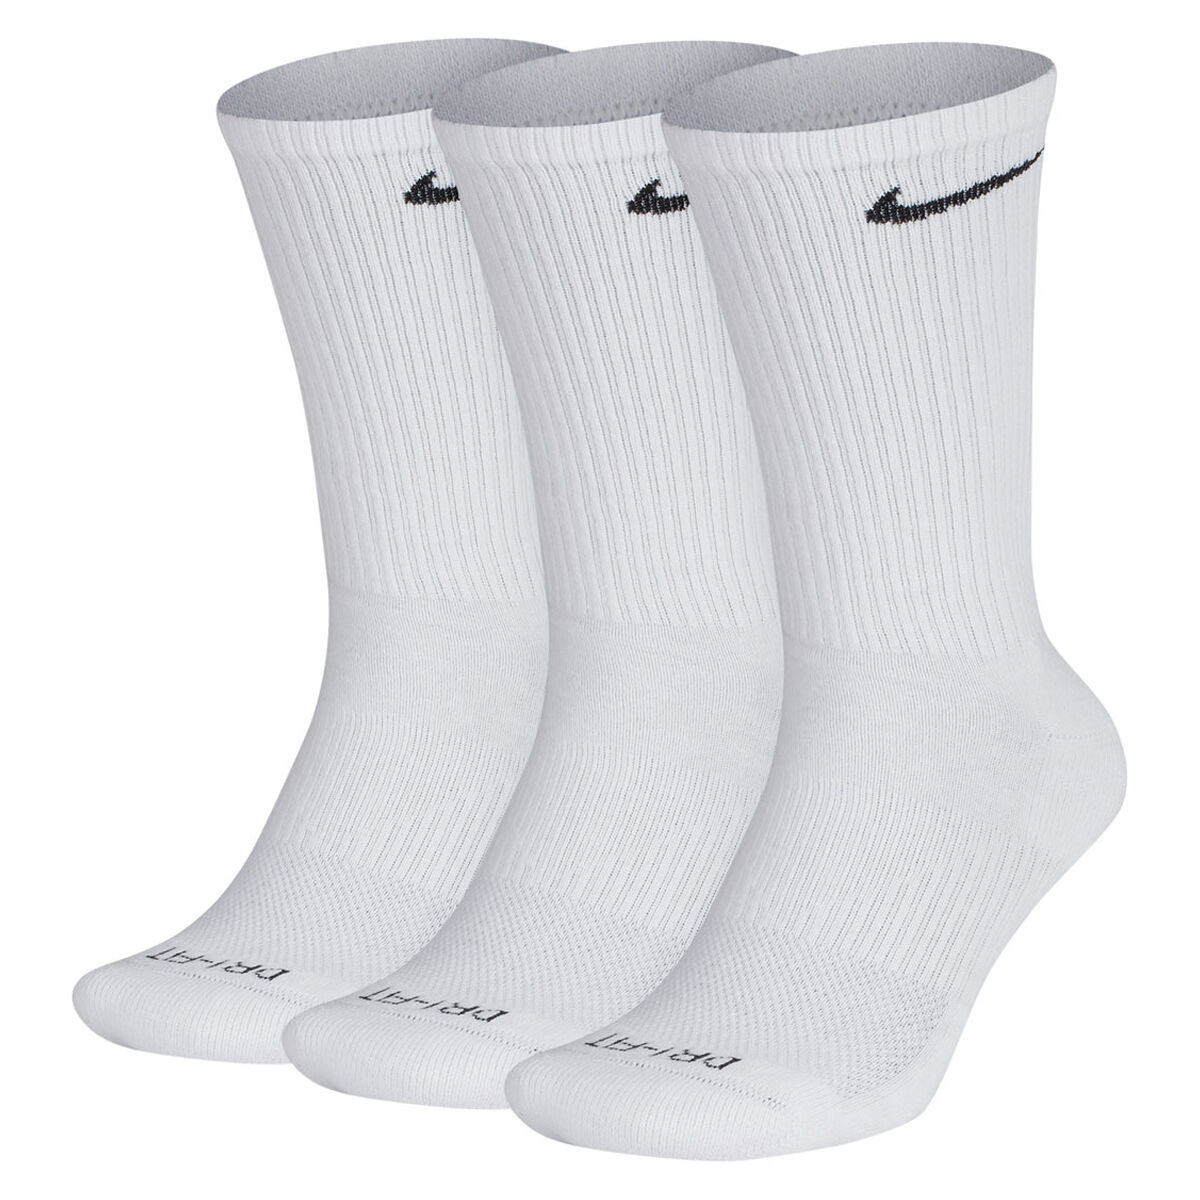 nike socks cost